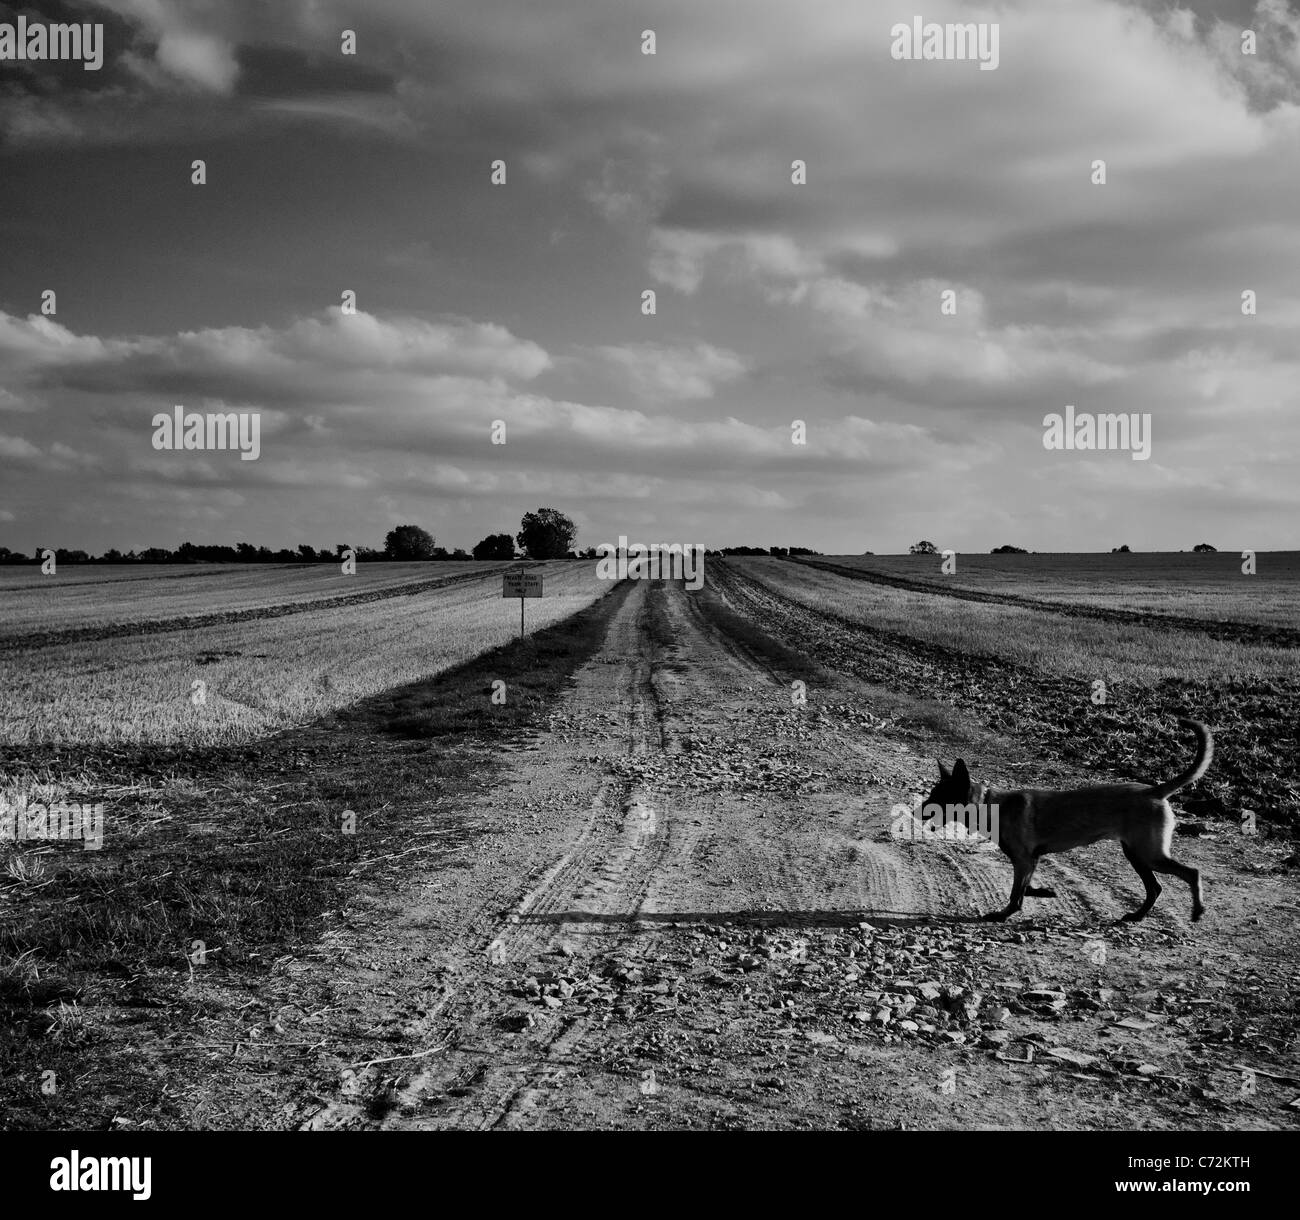 Un jeune Belge Malinoise à flâner à travers un paysage sombre en noir et blanc Banque D'Images